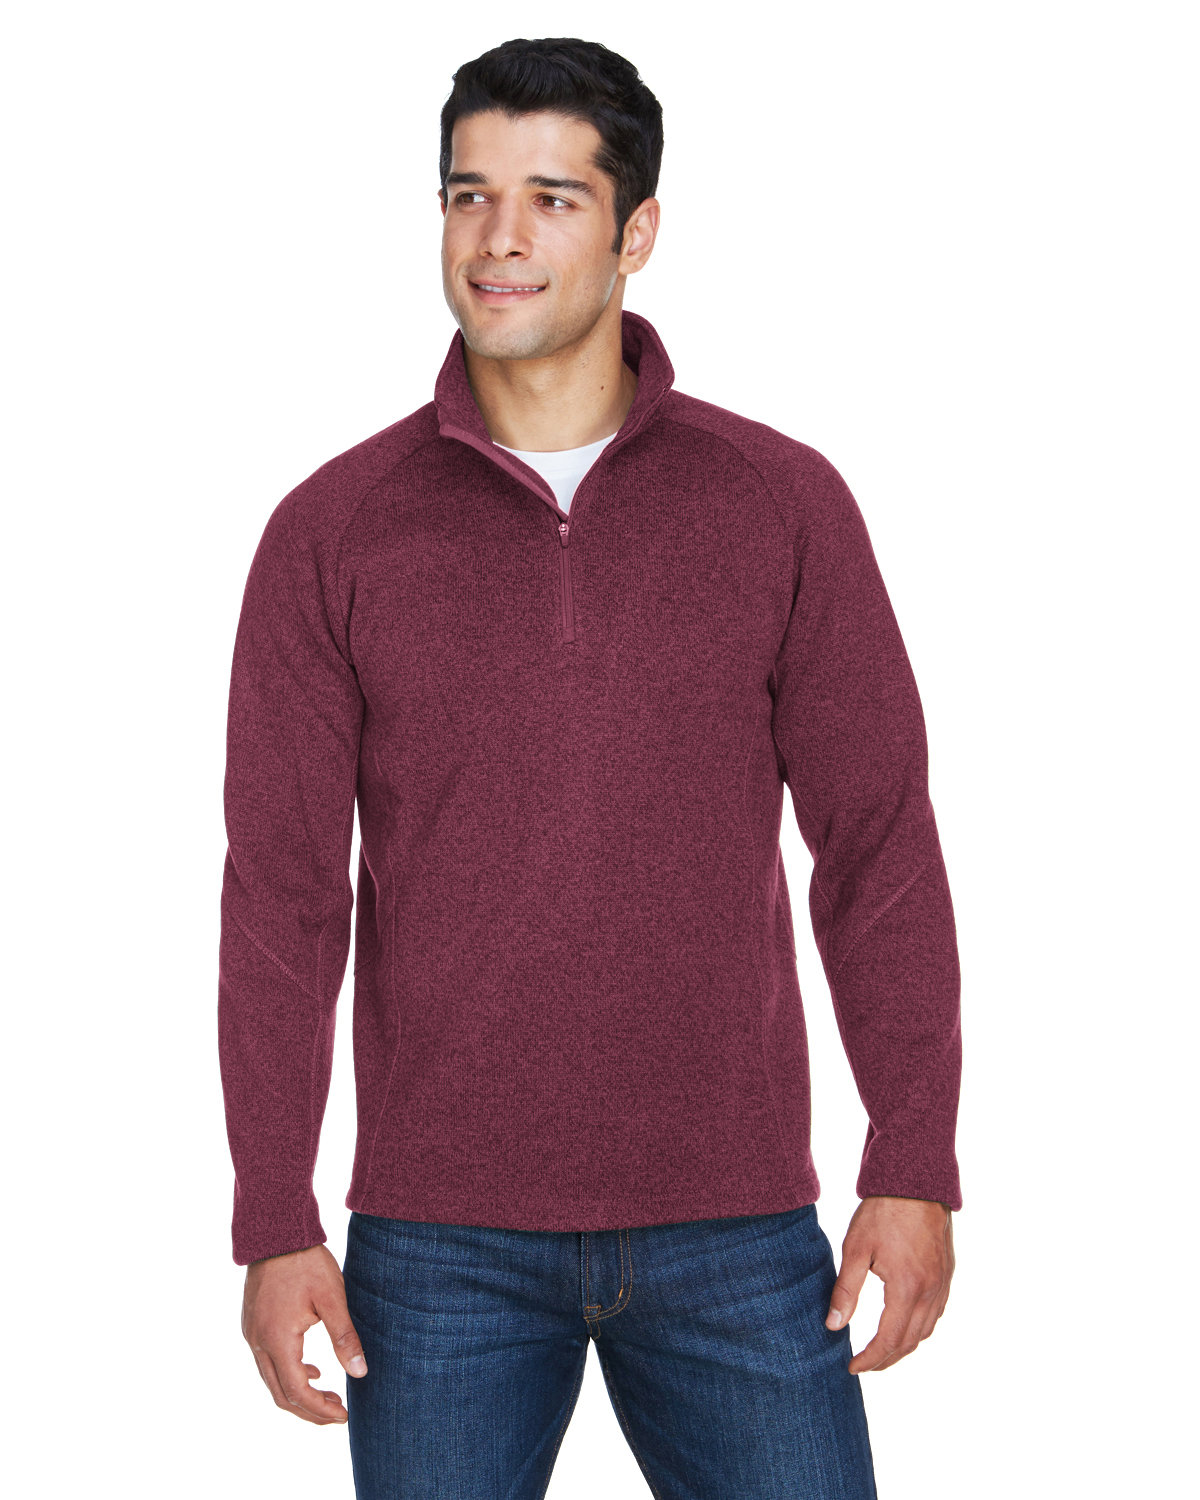 Devon & Jones Adult Bristol Sweater Fleece Quarter-Zip BURGUNDY HEATHER 